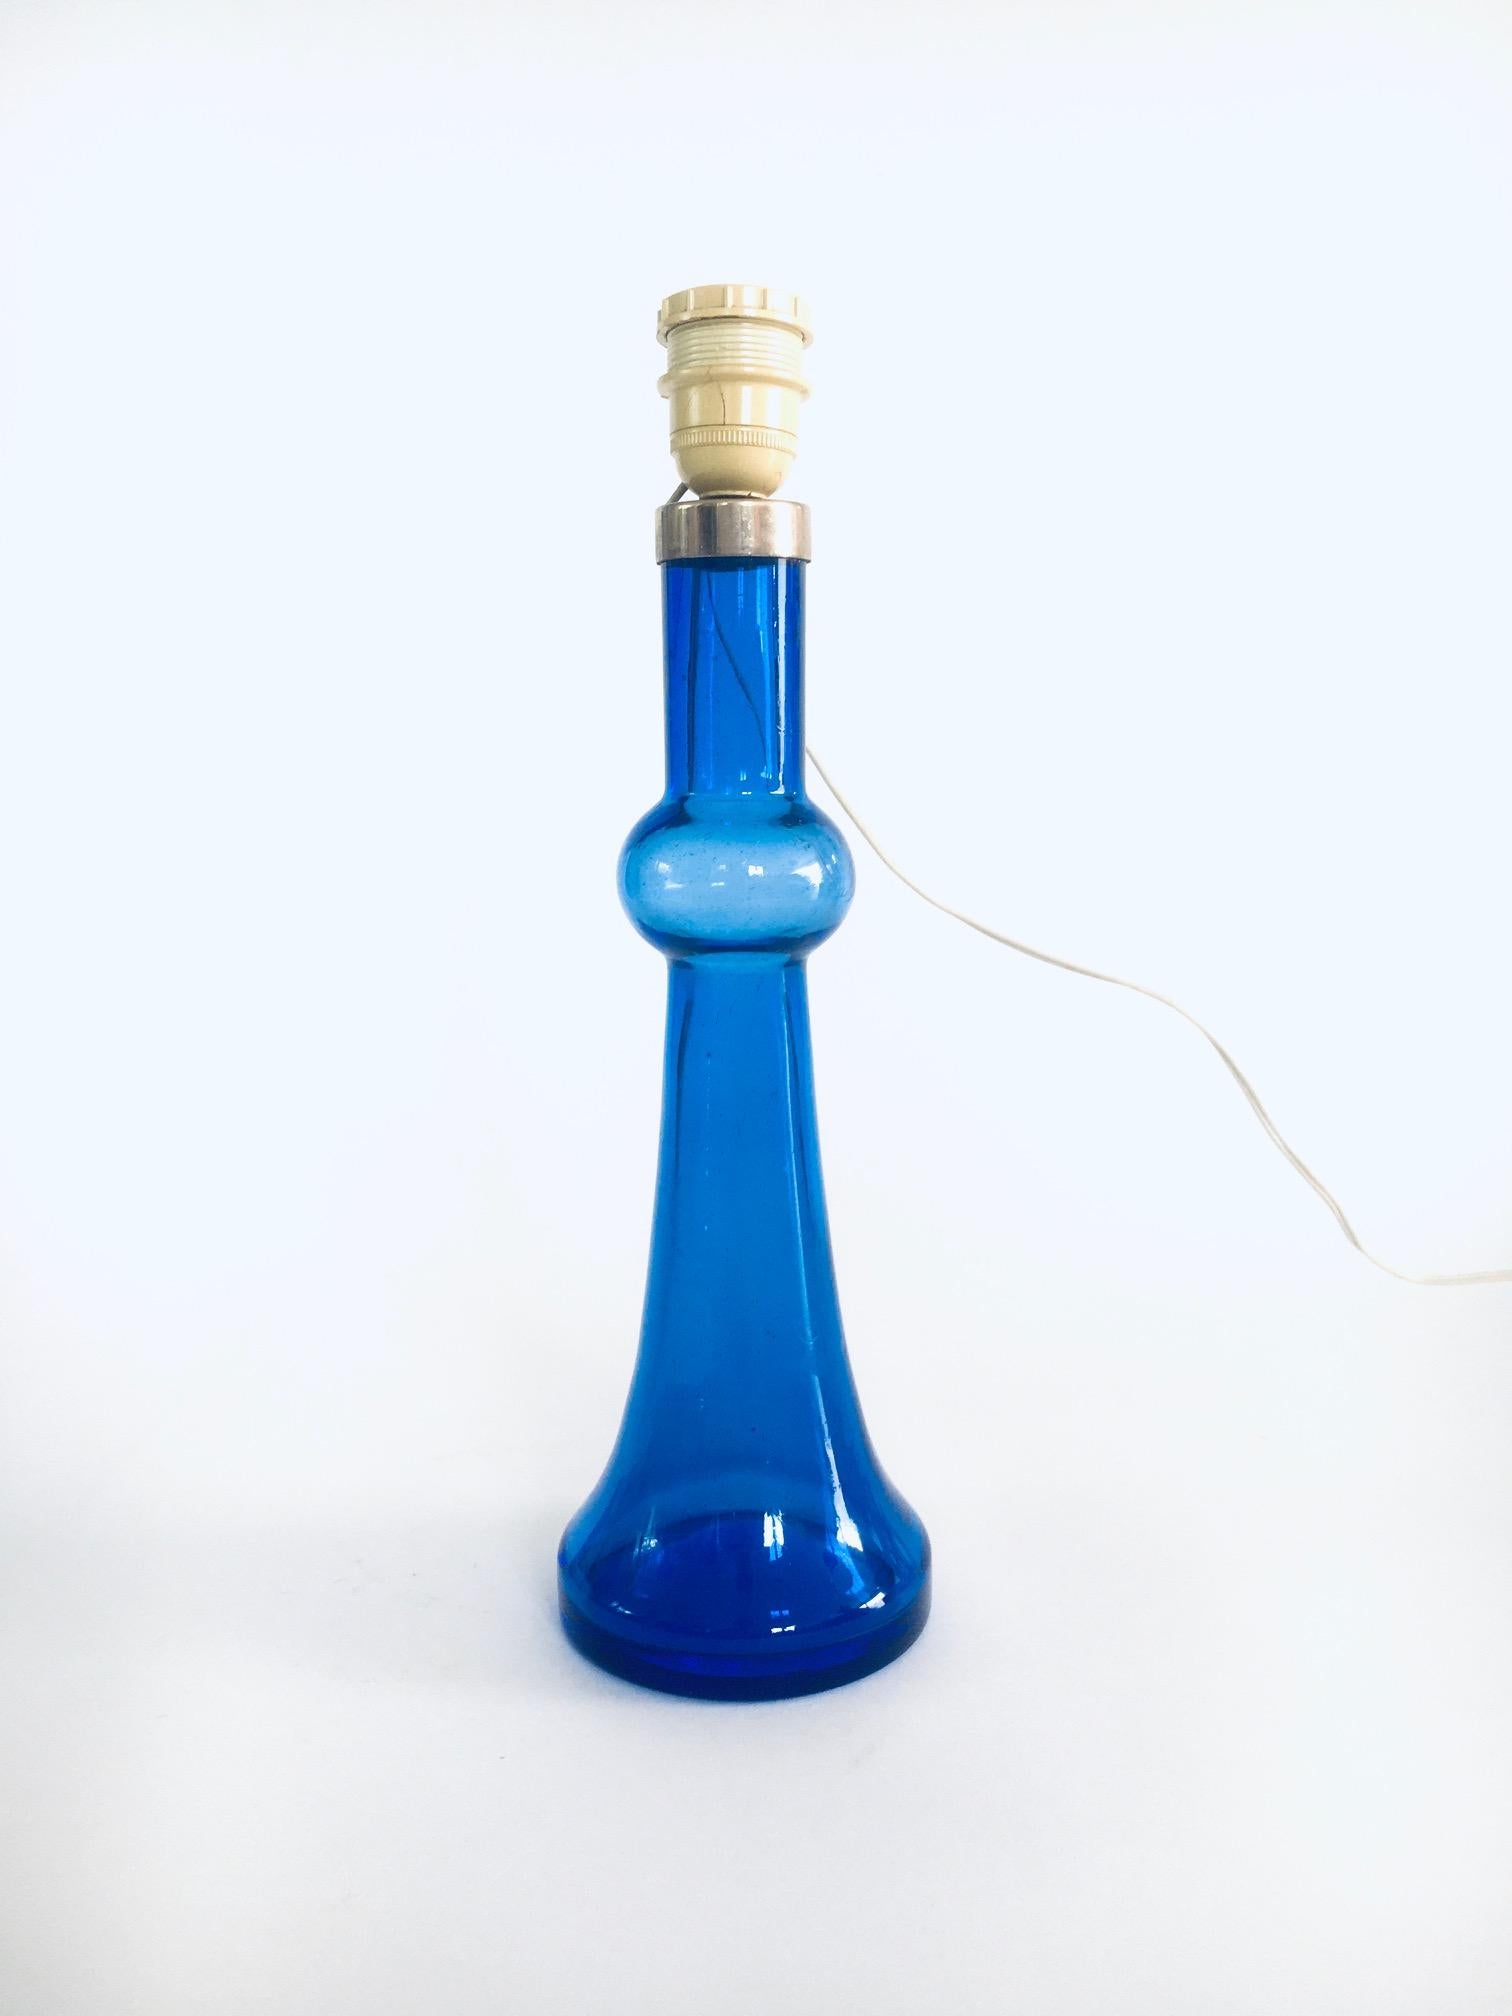 Vintage Midcentury Design Blaue Glastischlampe von Nanny Still für Raak, Amsterdam, Niederlande, 1960er / 70er Jahre. Blau gefärbter Glasfuß mit Originalbeschlägen. Handgefertigtes Glas. Es ist in sehr gutem, originalem Zustand. Maße (ohne Schirm)